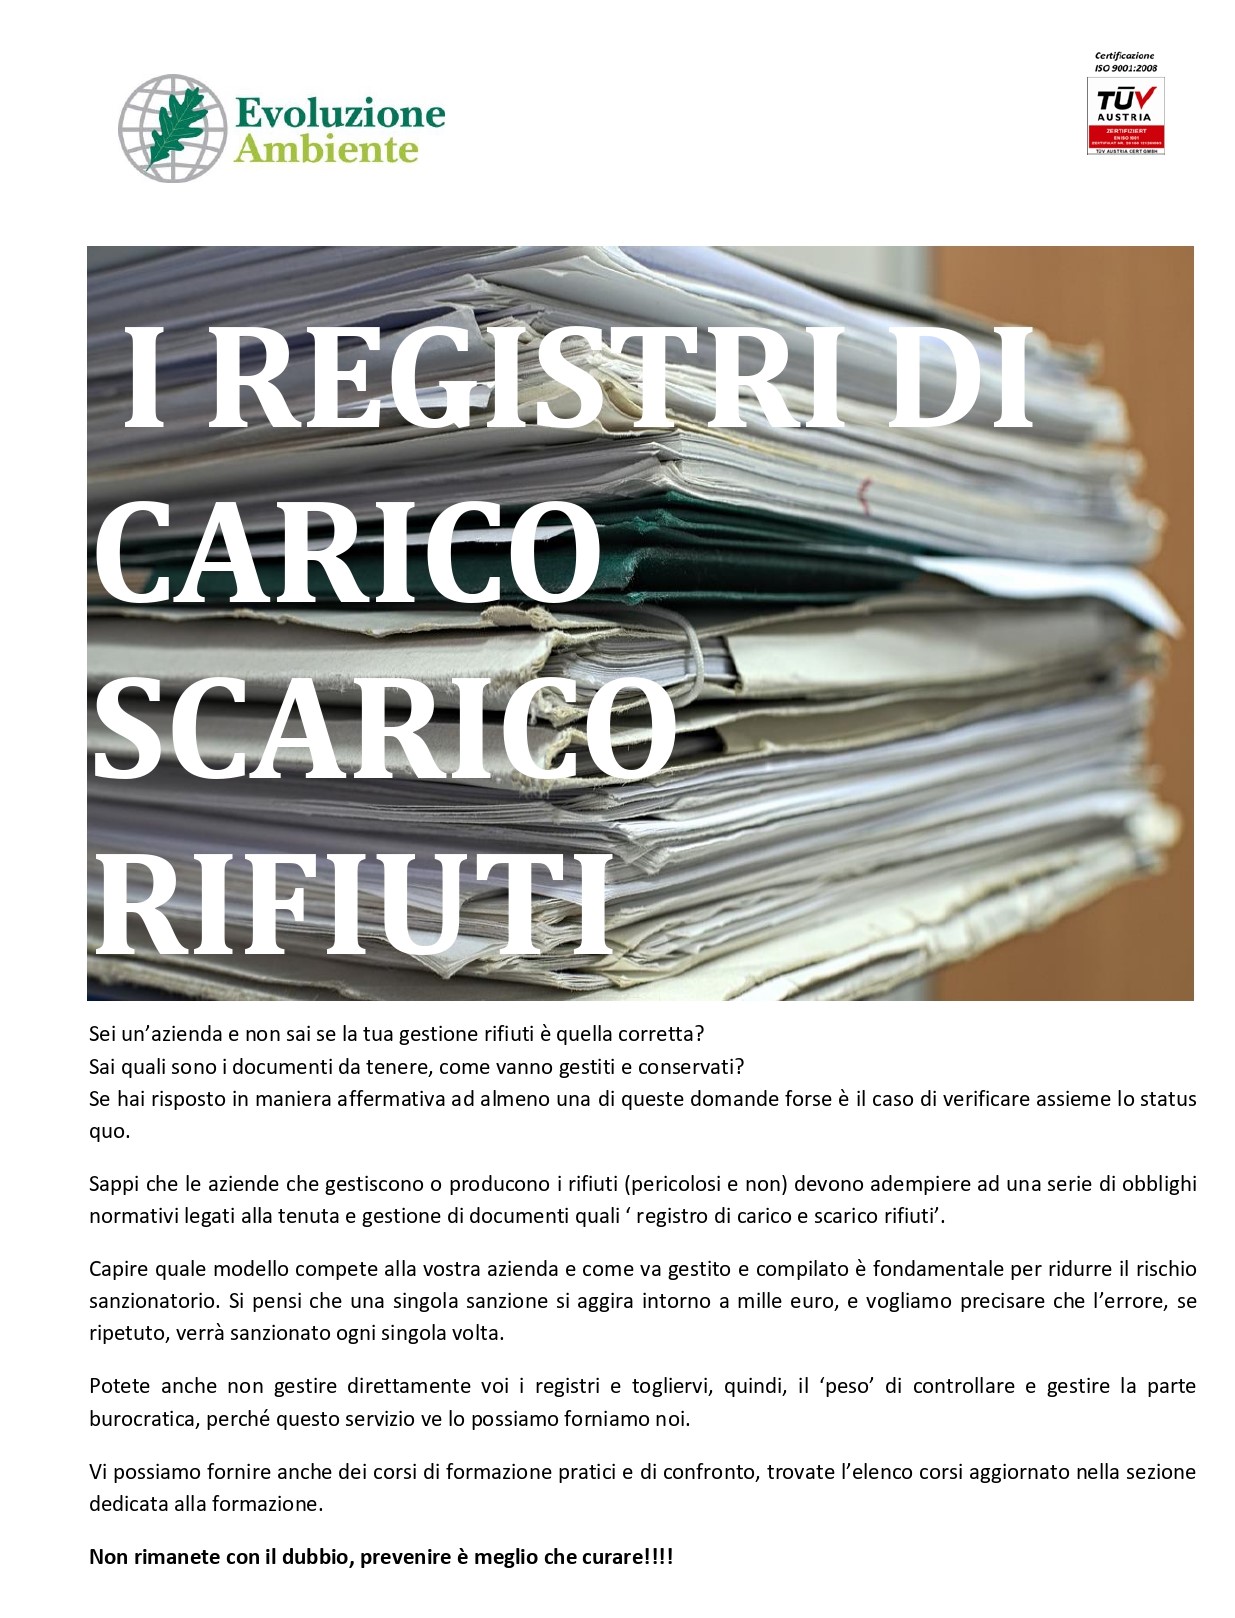 REGISTRO CARICO SCARICO RIFIUTI PER, REGISTRI